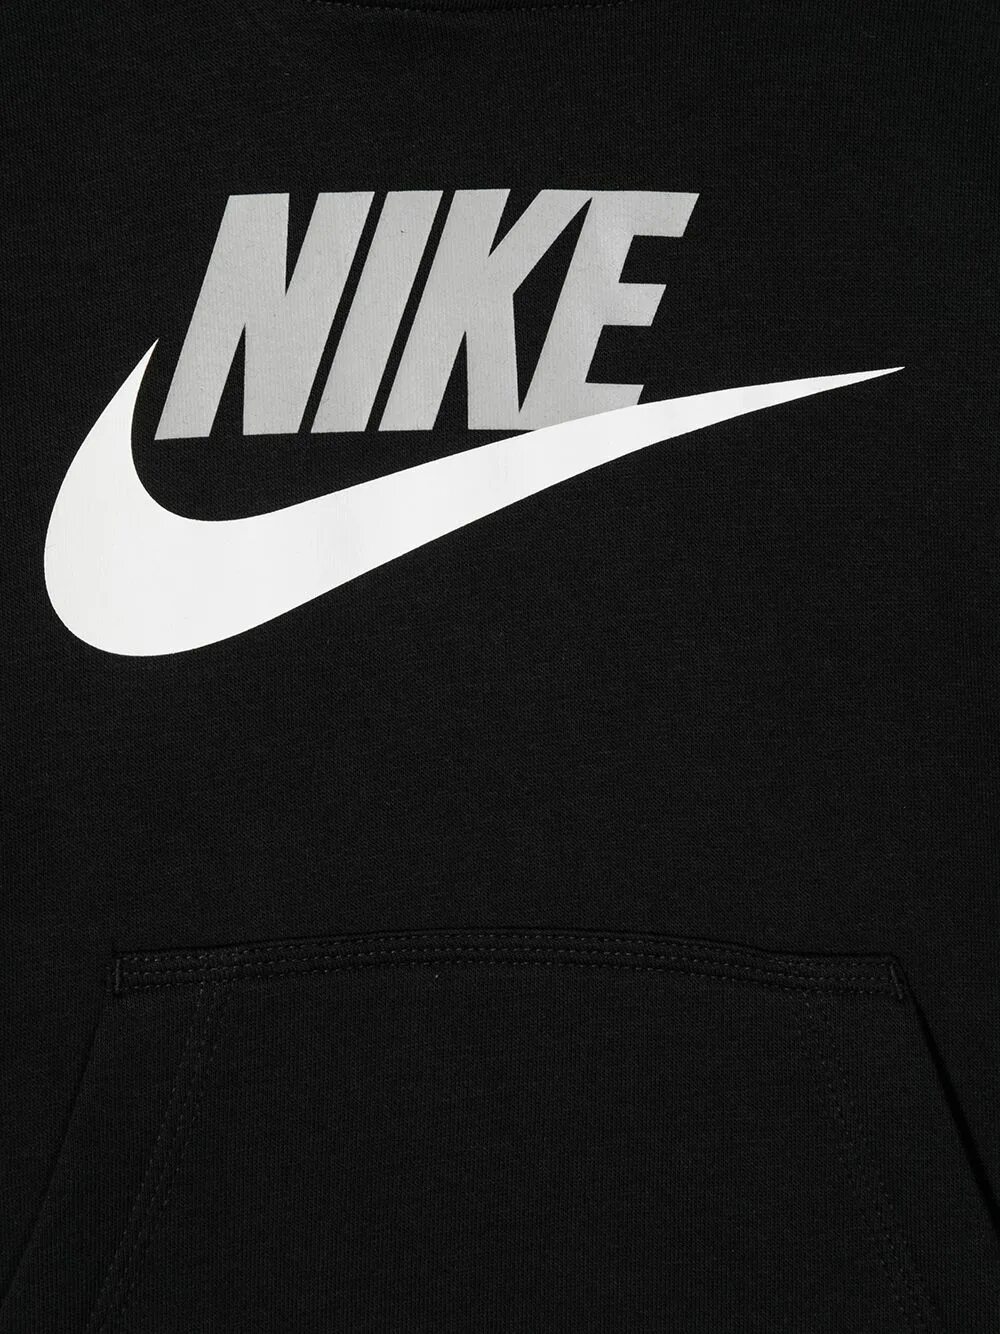 Найк. Nike знак. Бренд найк логотип. Nike логотип на магазине.